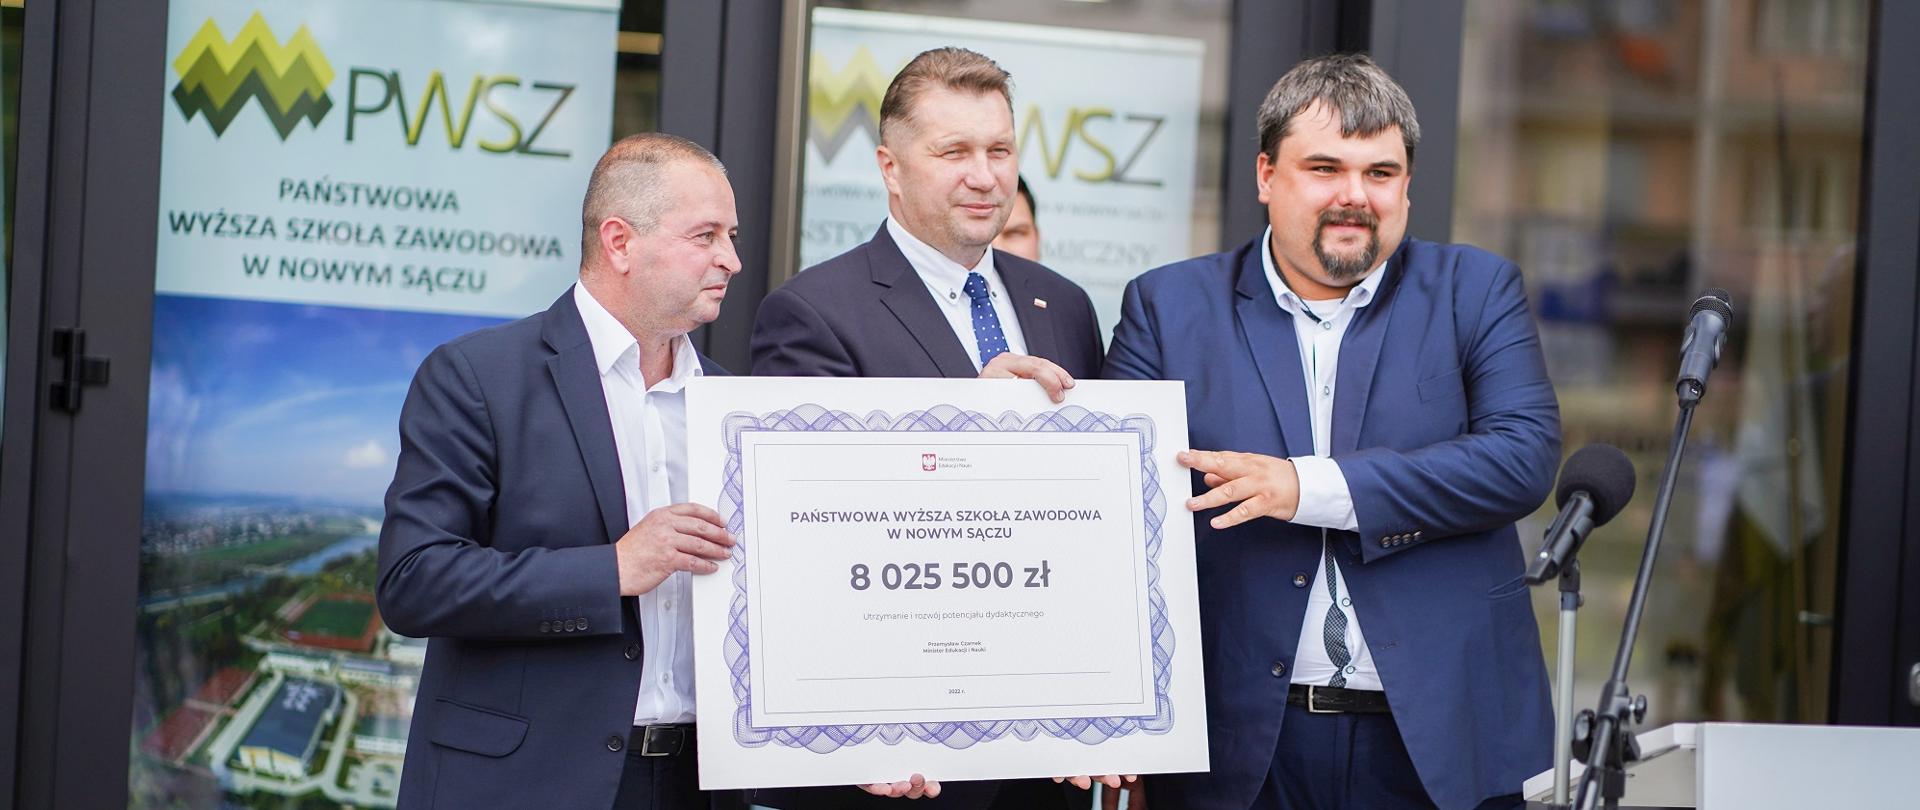 Minister stoi z dwoma ludźmi w garniturach, pokazują wielki symboliczny czek z napisem 8 025 500 zł.